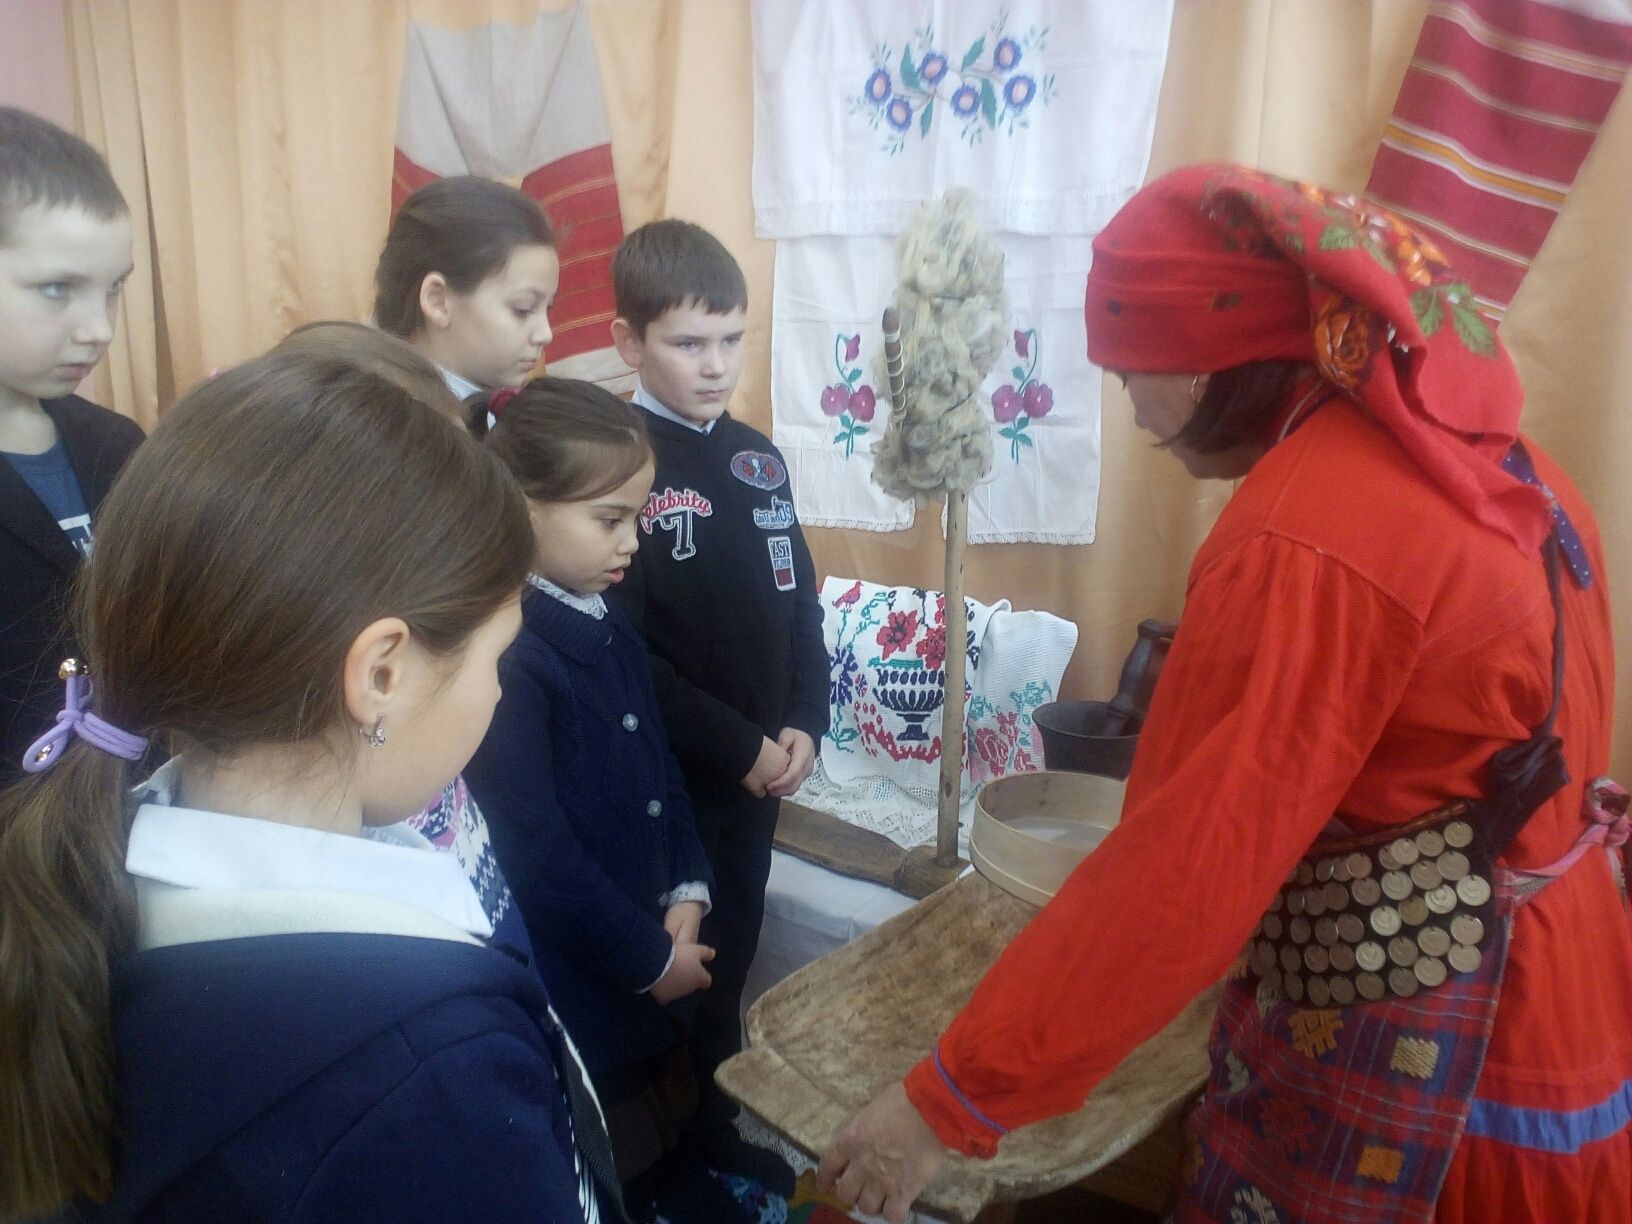 Особенности национального костюма, традиции, обычаи... В Чистопольском районе проходит месячник кряшенской культуры